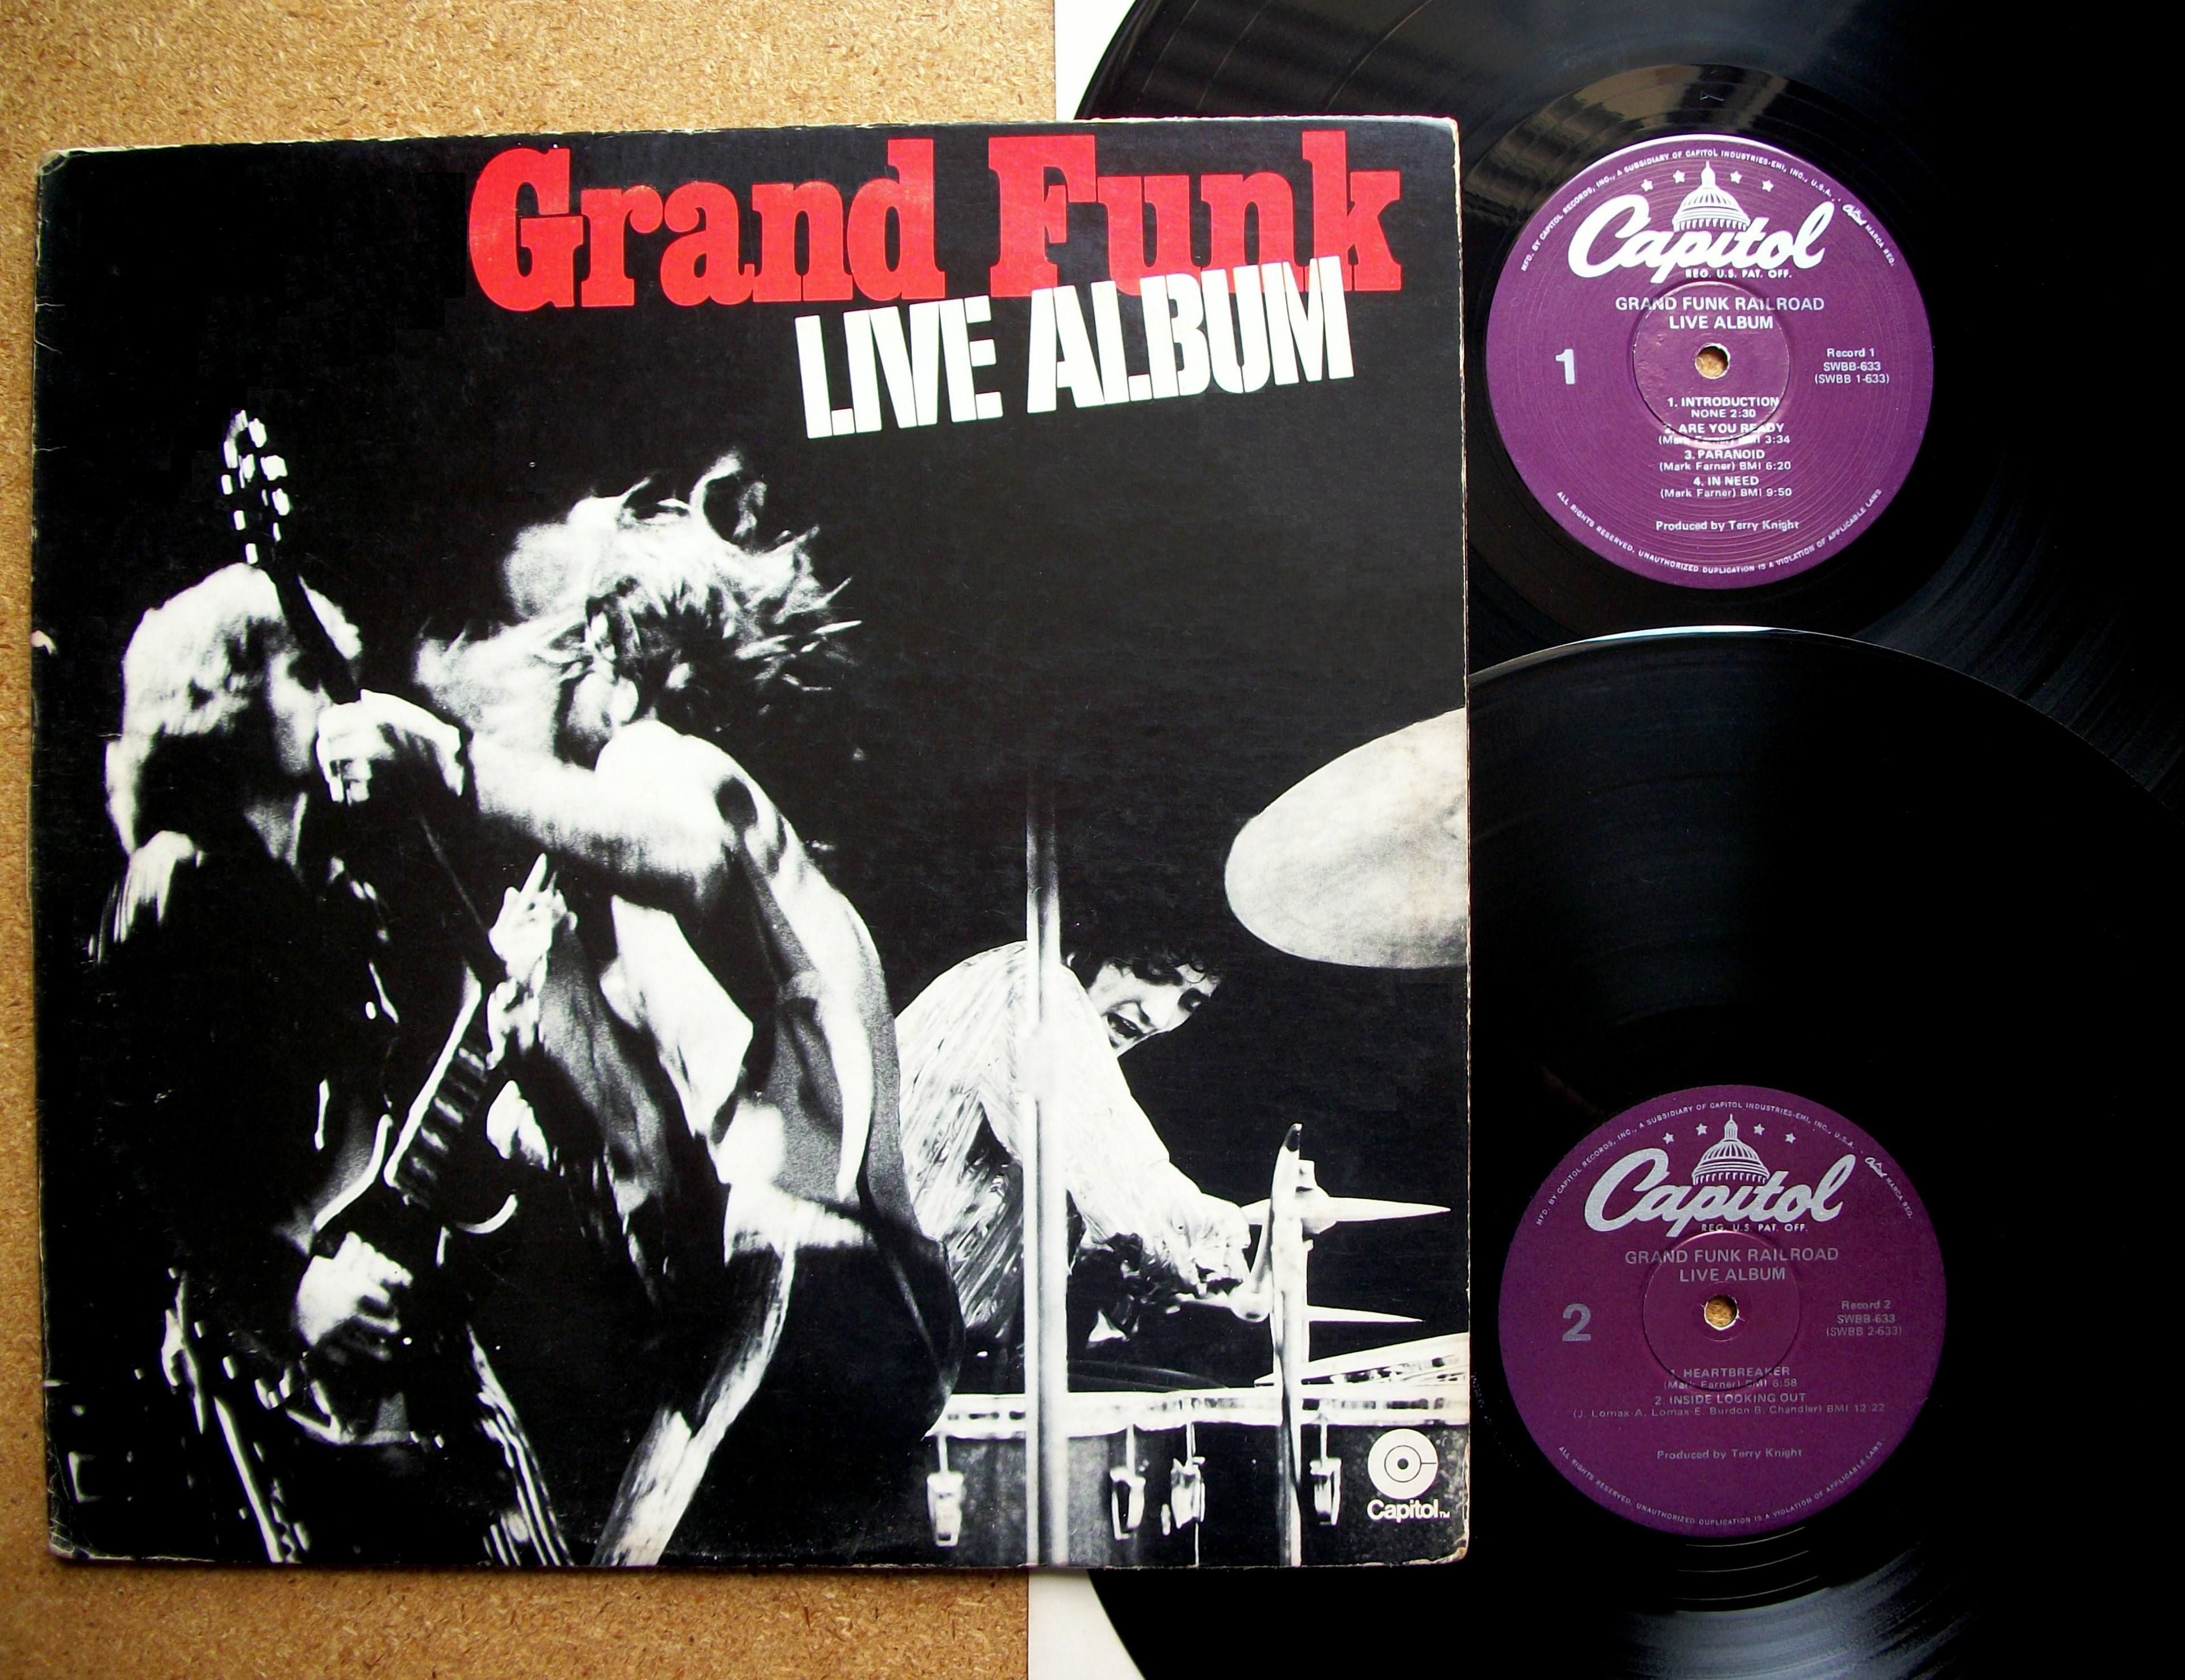 Grand Funk Lives 1981. Grand Funk* – Live album. Grand Funk Railroad. Grand Funk Railroad аппаратура на концертах. Grand funk слушать